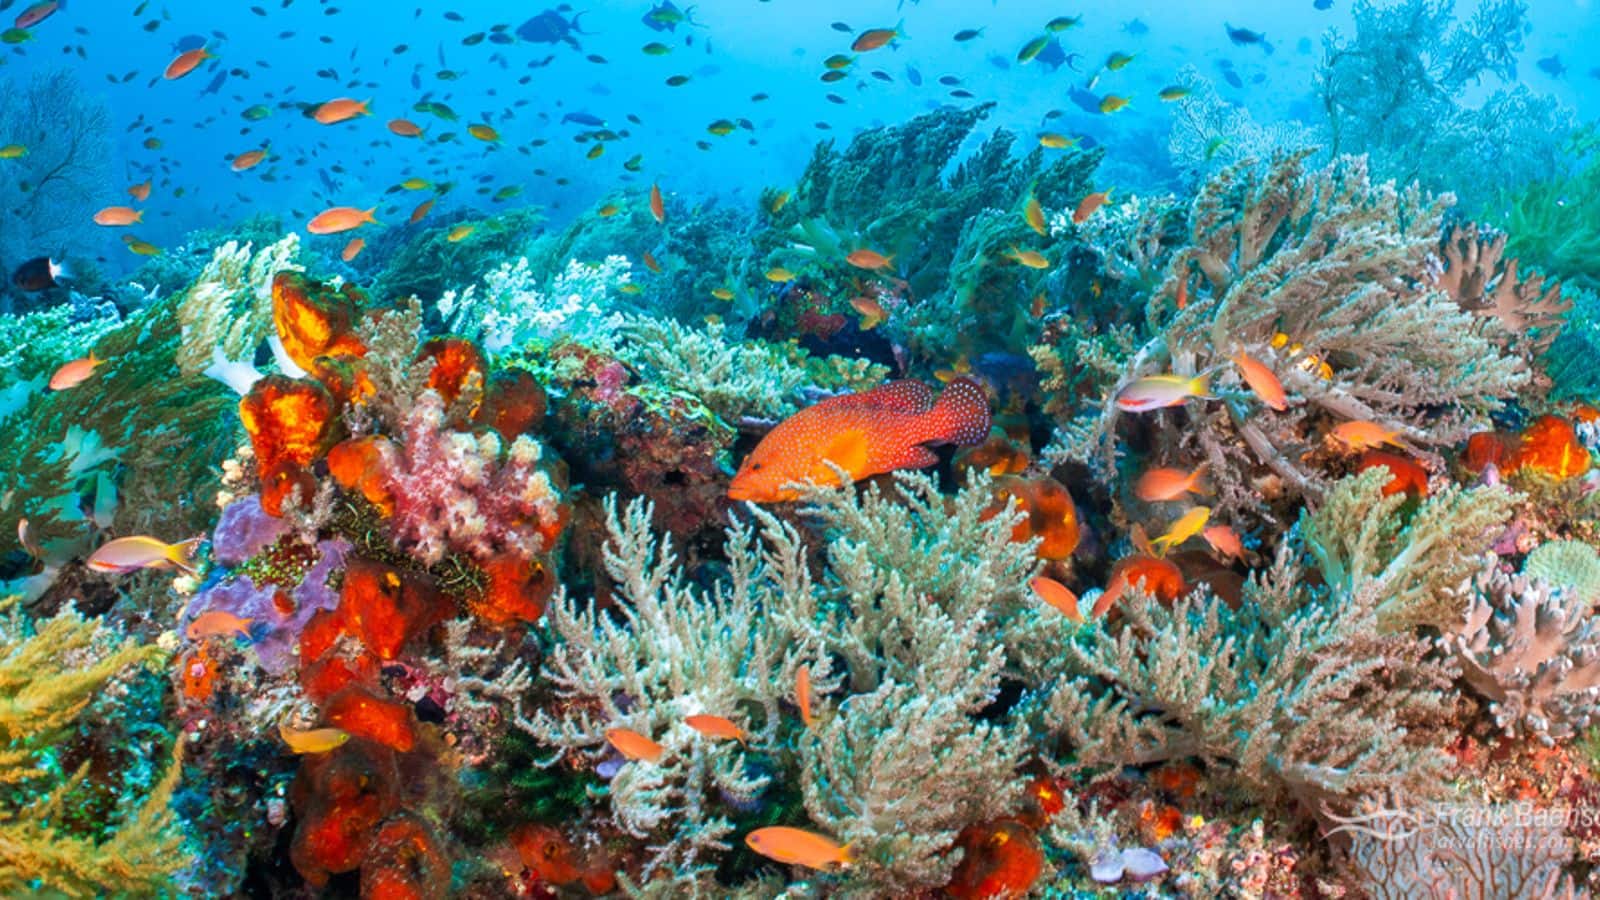 Dive into Raja Ampat's underwater paradise in Indonesia